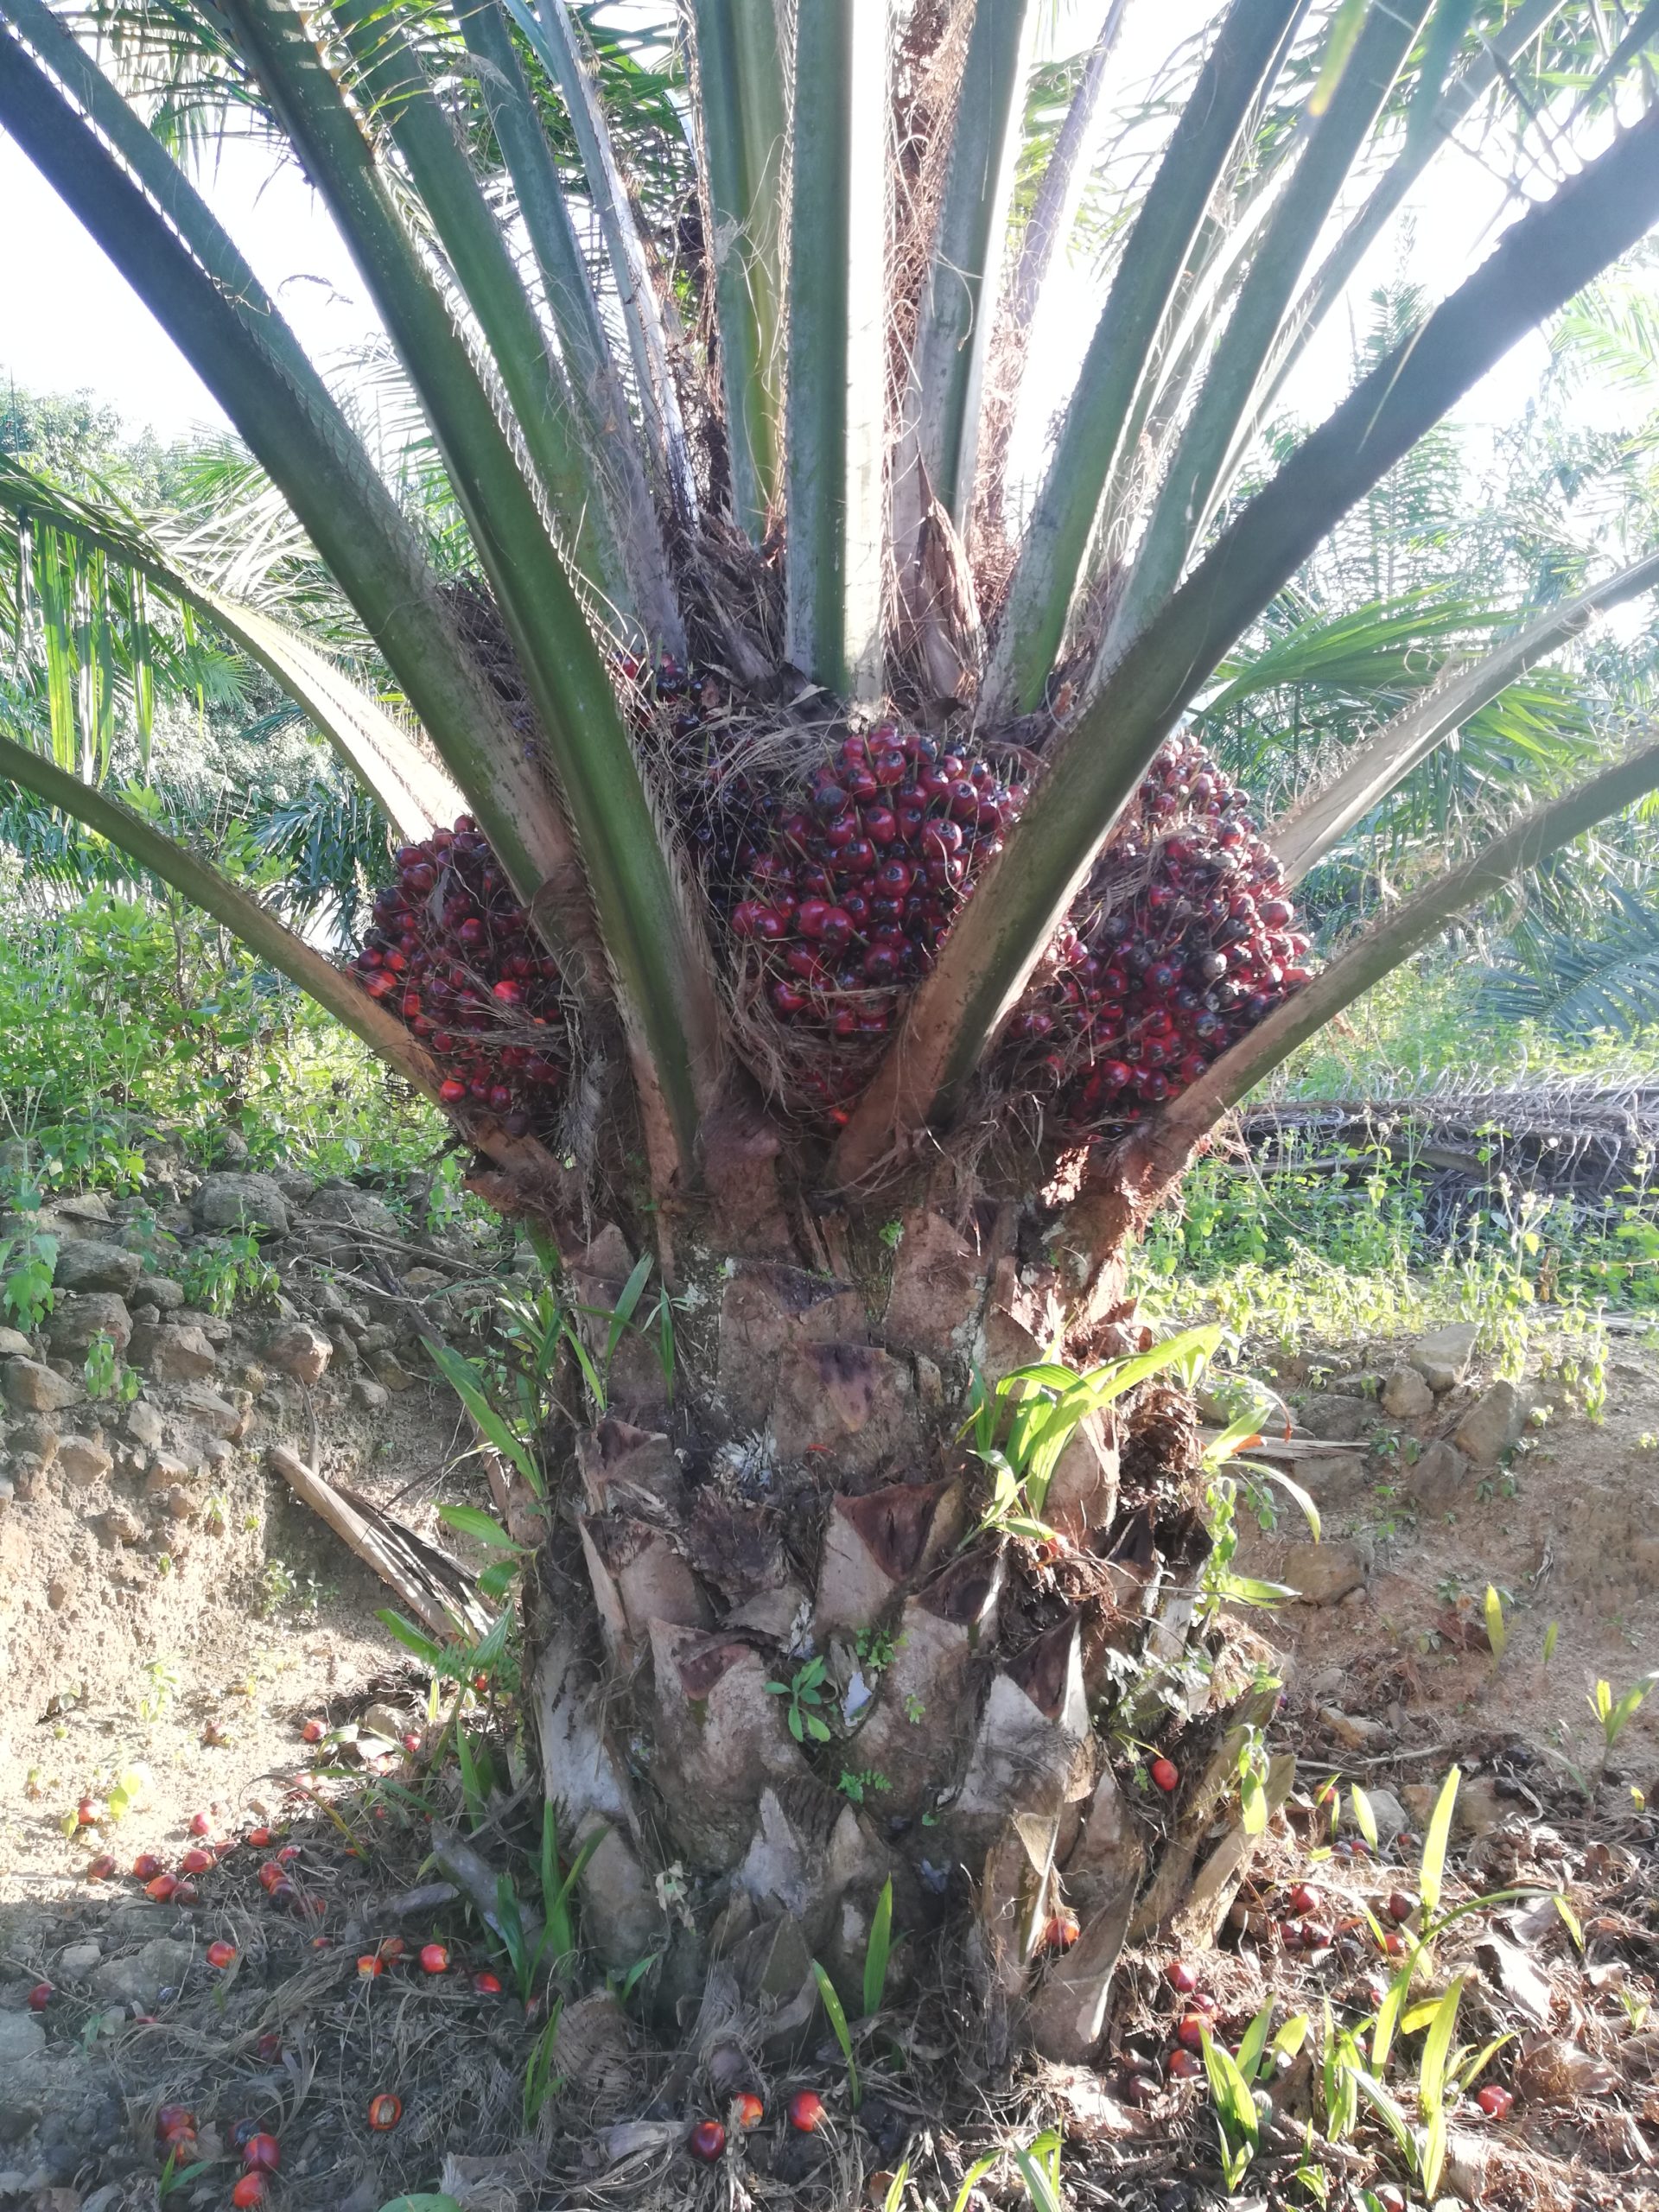 A single palm oil plant